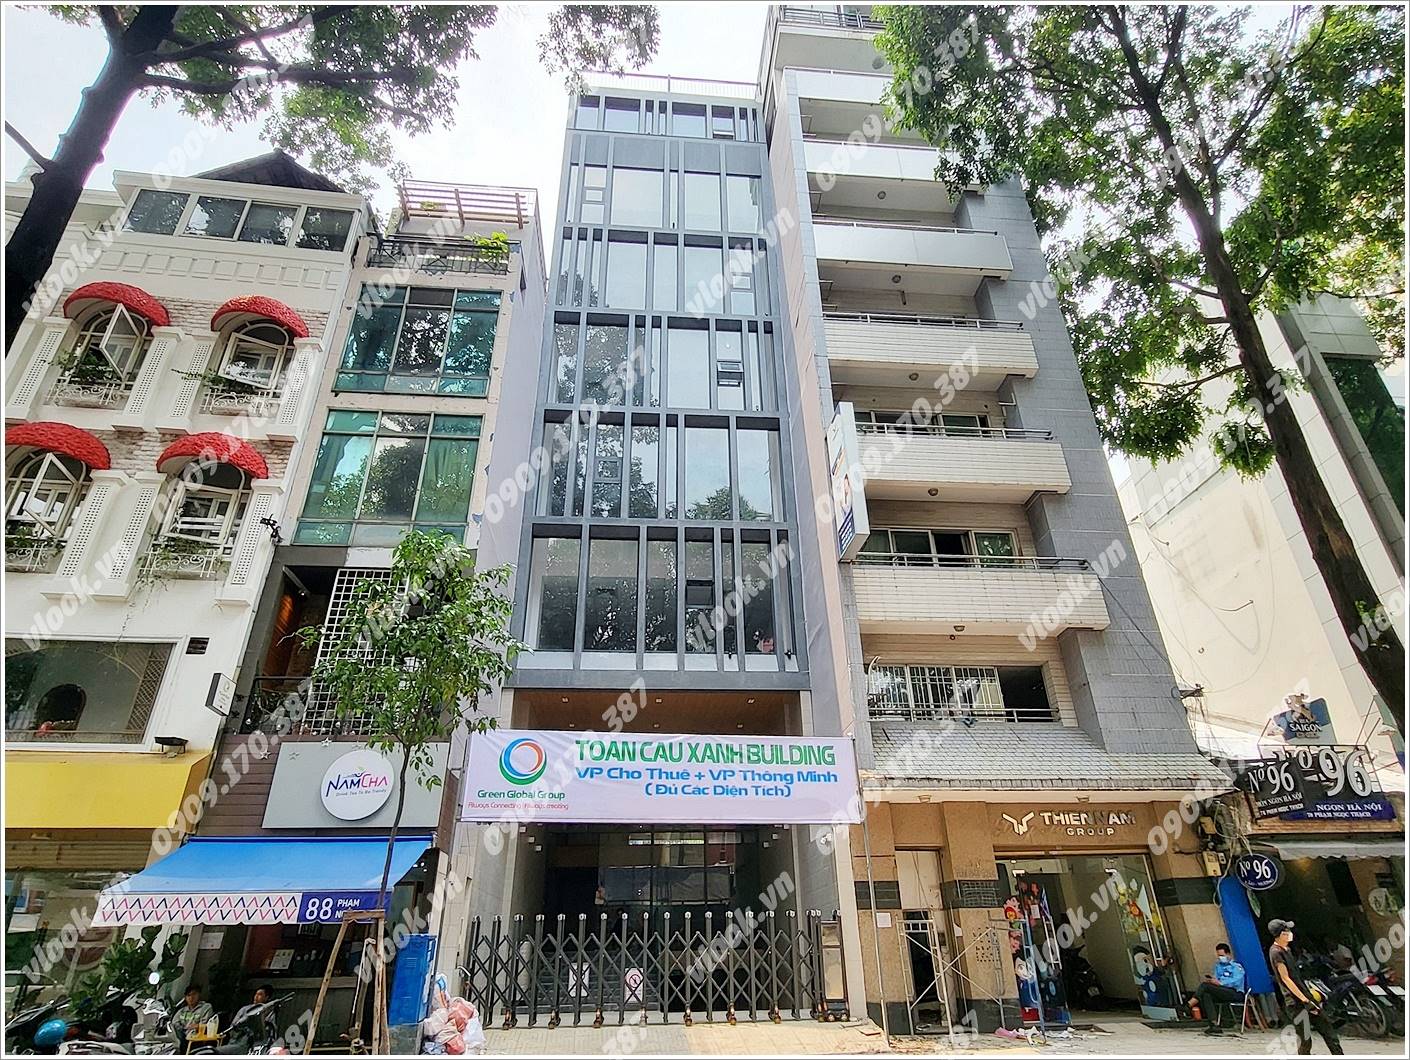 Cao ốc văn phòng cho thuê tòa nhà Toàn Cầu Xanh Building, Phạm Ngọc Thạch, Quận 3, TPHCM - vlook.vn